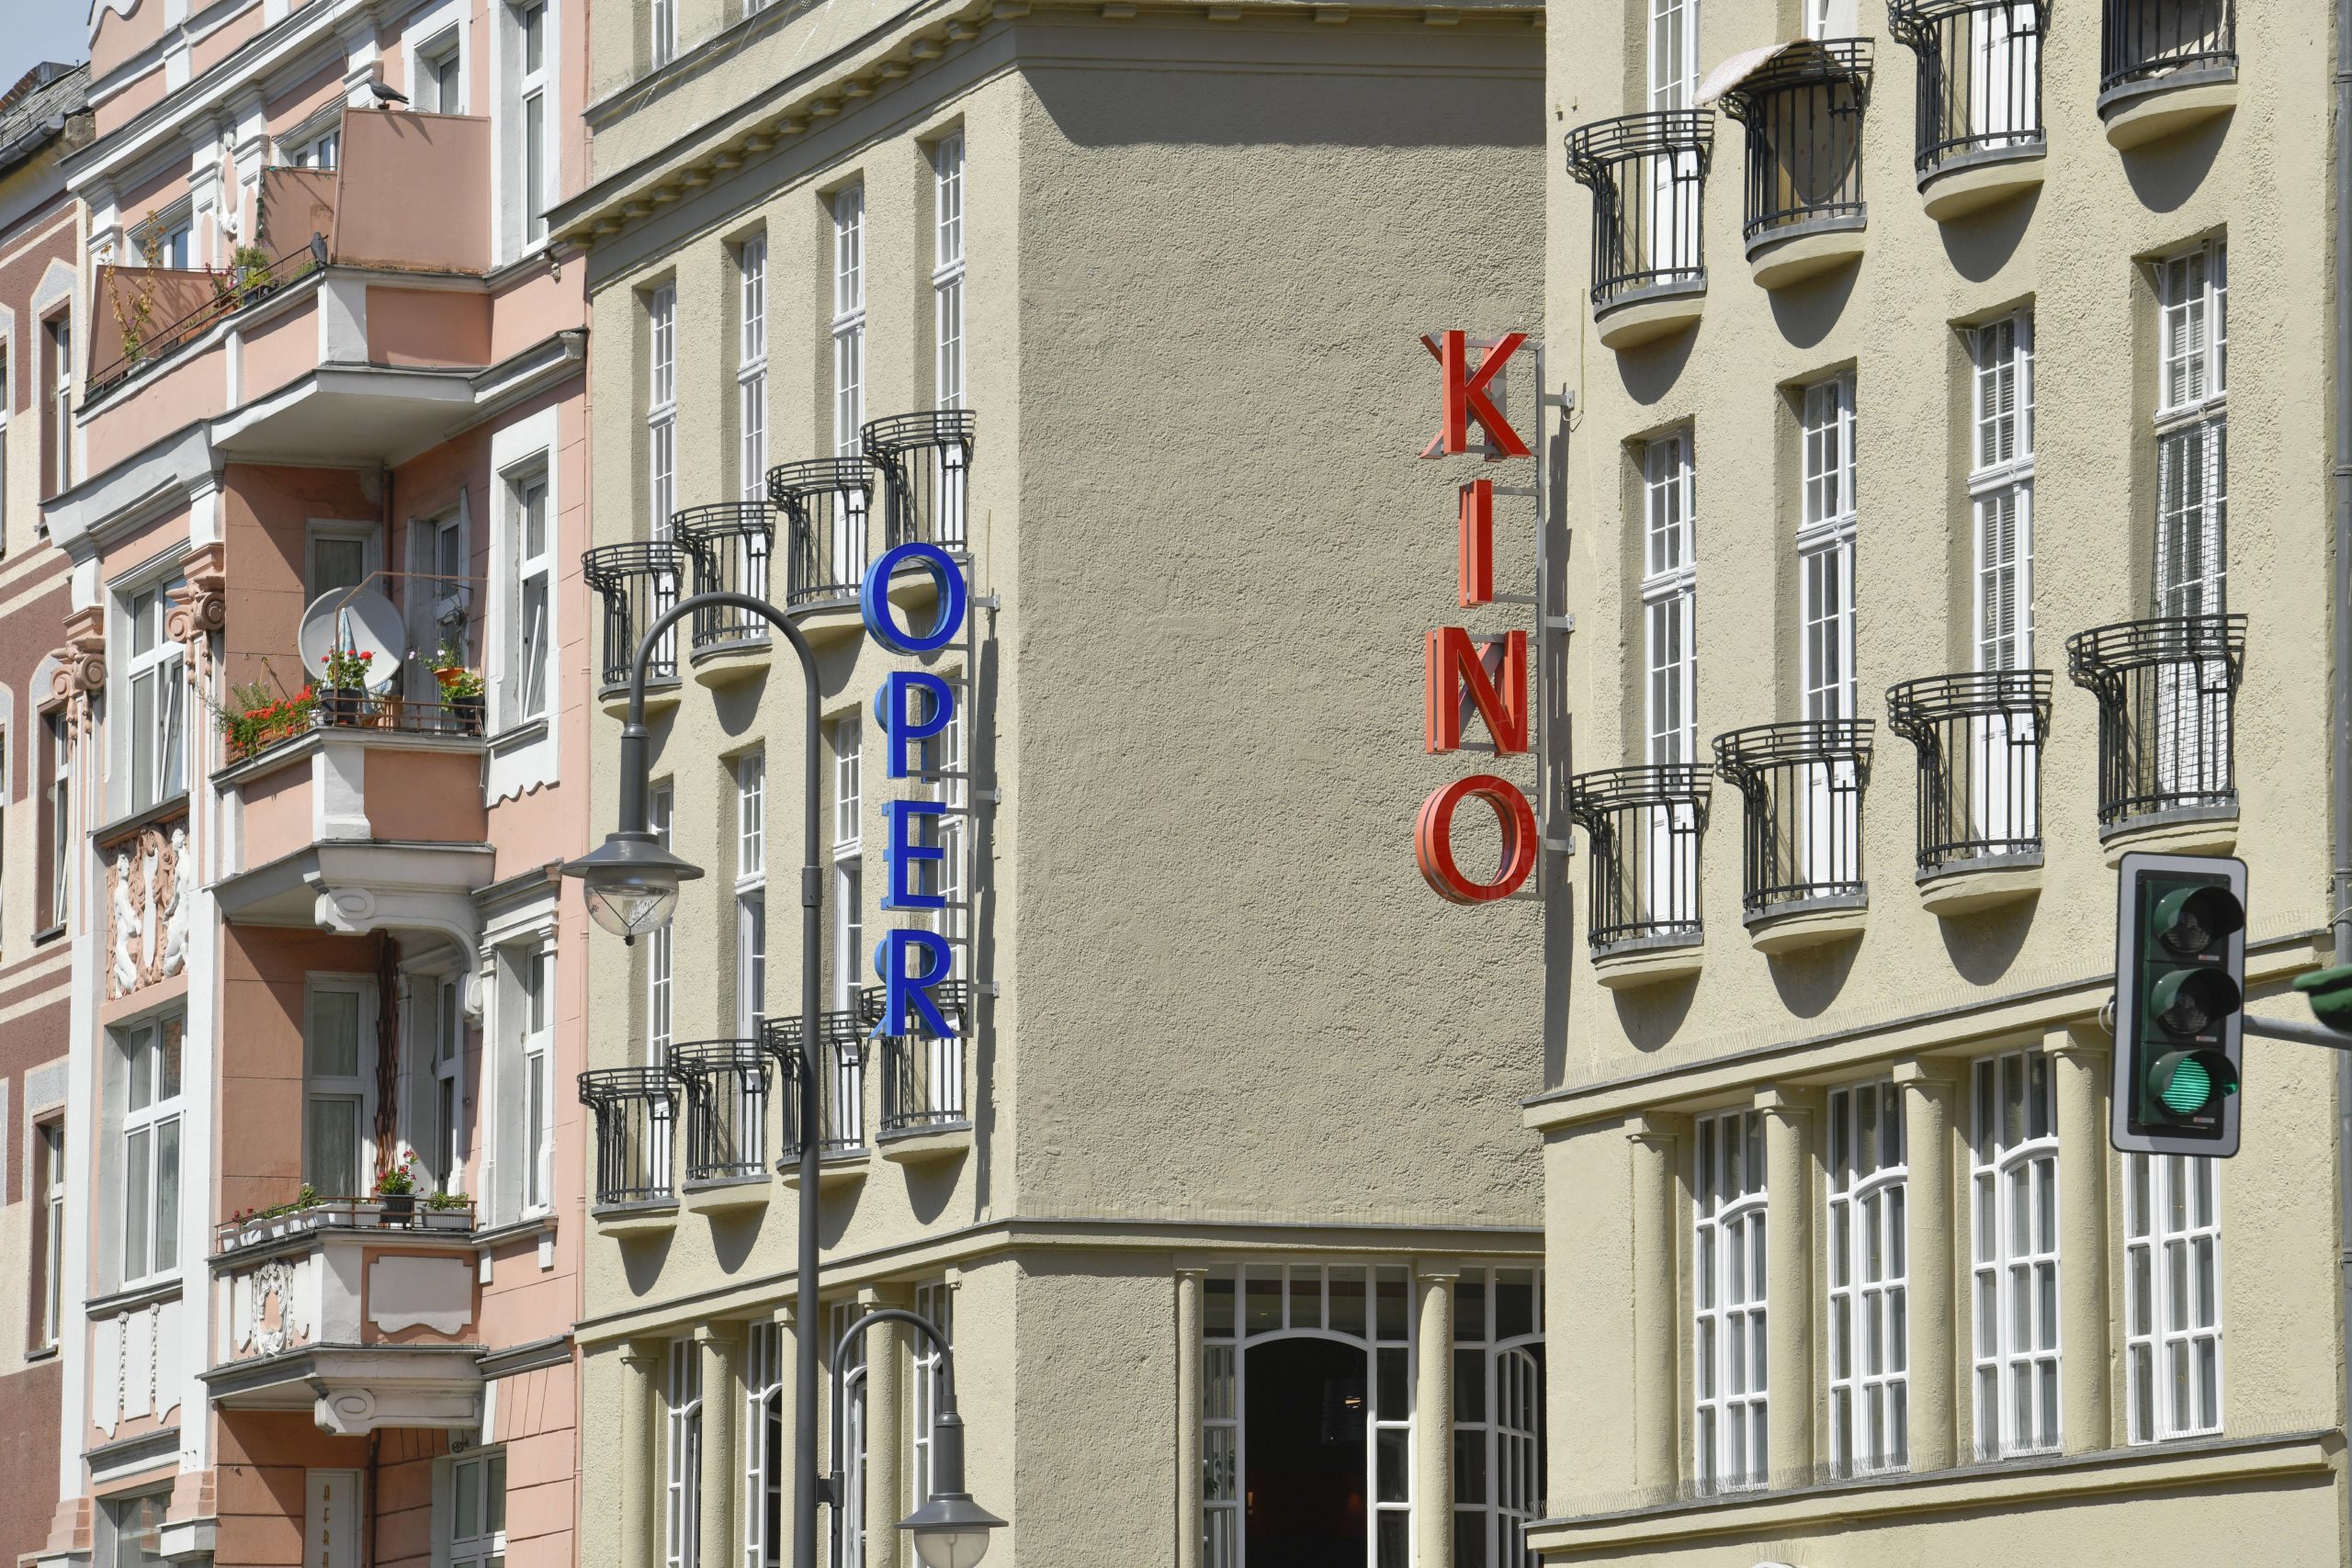 In die Oper gehen? Oder lieber ins Kino? Geht an der Karl-Marx-Straße beides. Foto: Imago/Schöning